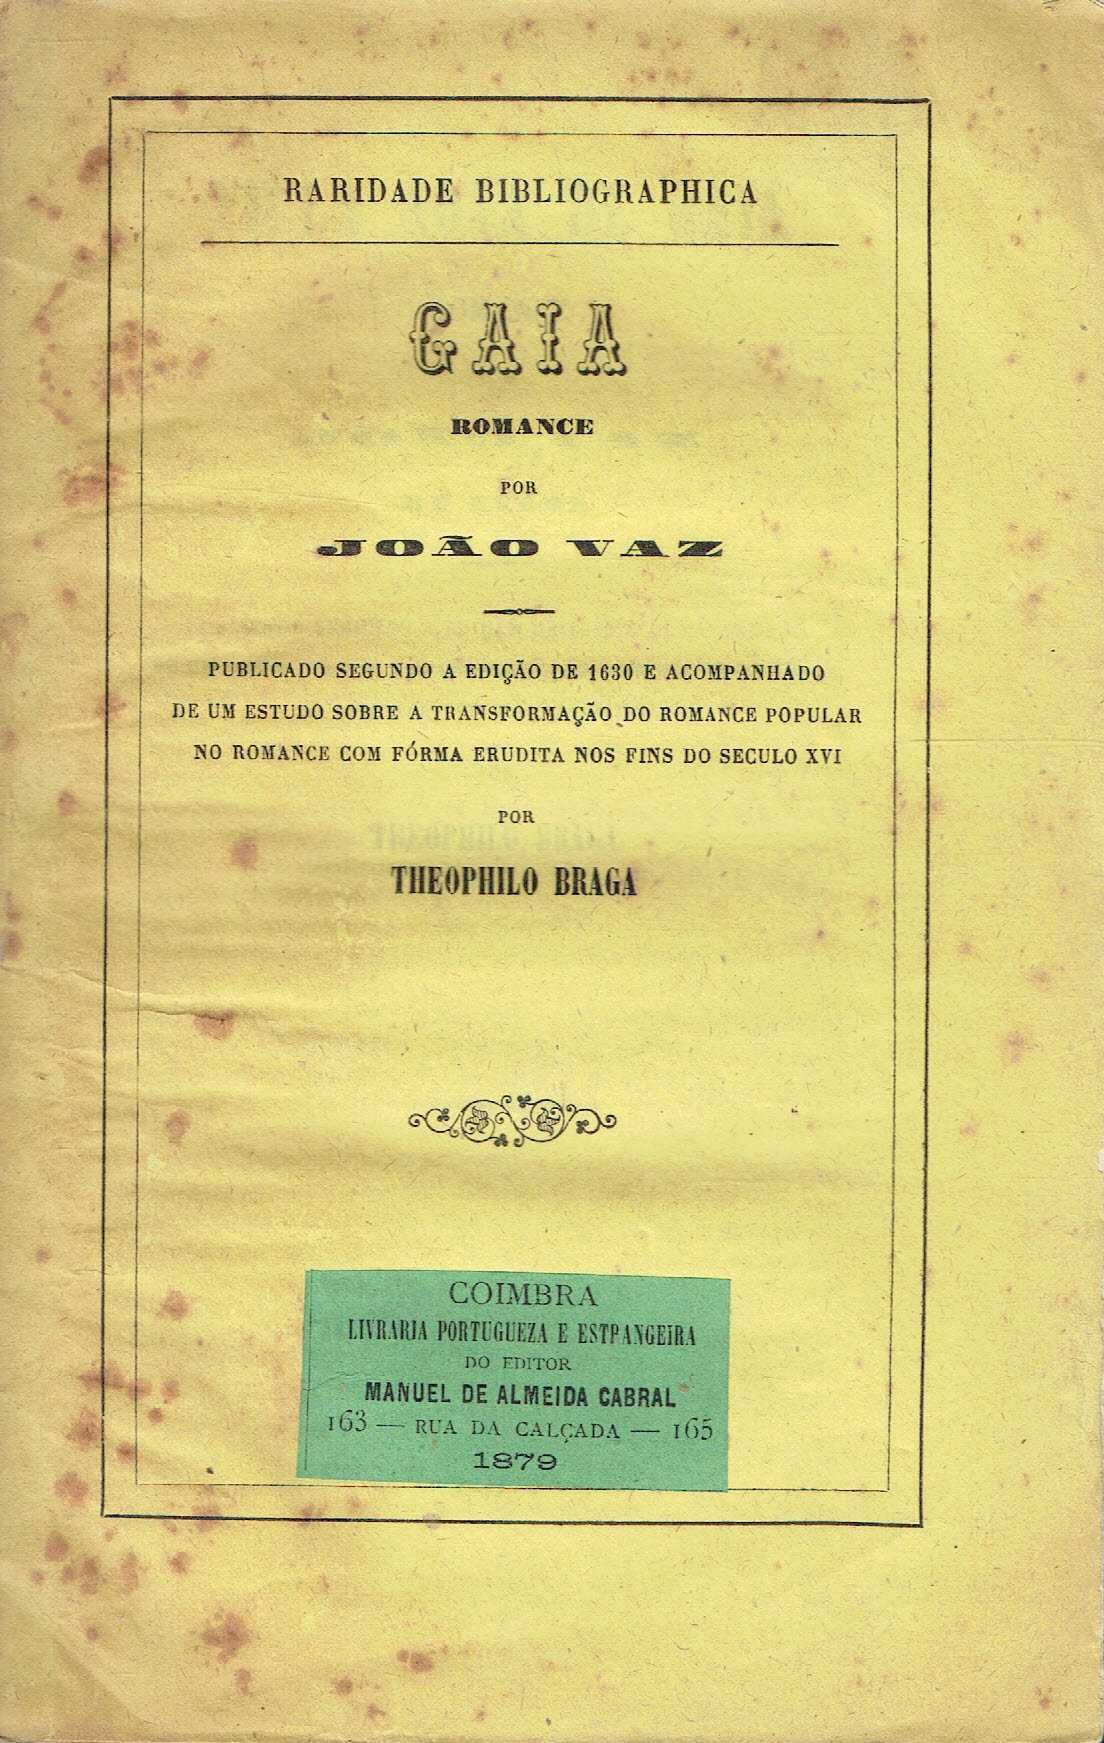 14910

GAIA - ROMANCE 
por JOÃO VAZ DE ÉVORA.